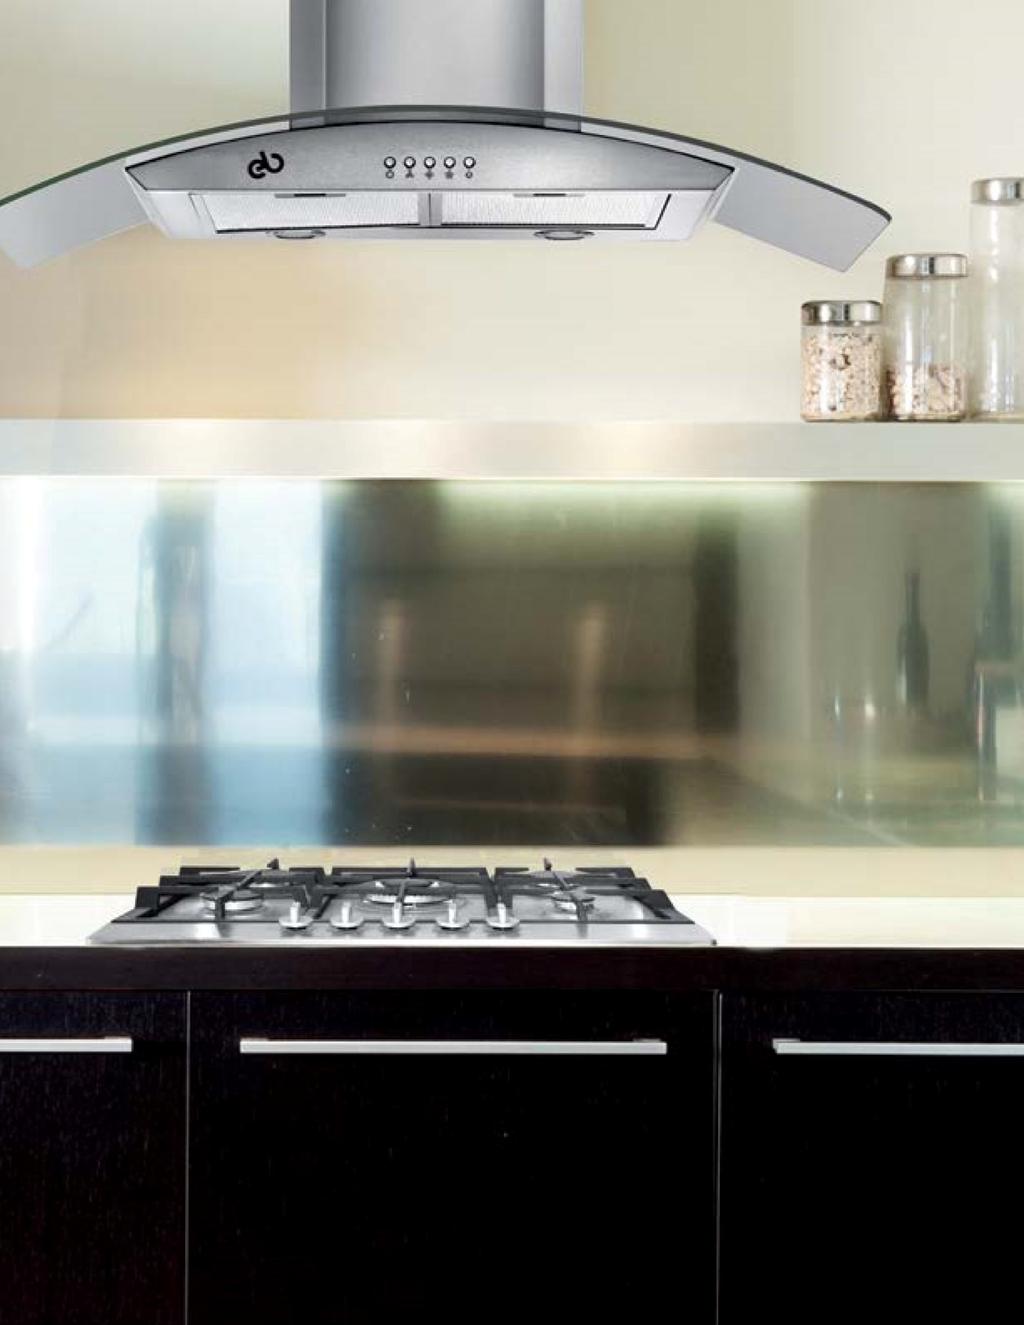 ELECTRODOMÉSTICOS Complementa el diseño de tu cocina con los electrodomésticos EB, su estética en acero inoxidable y cristal, les da la versatilidad